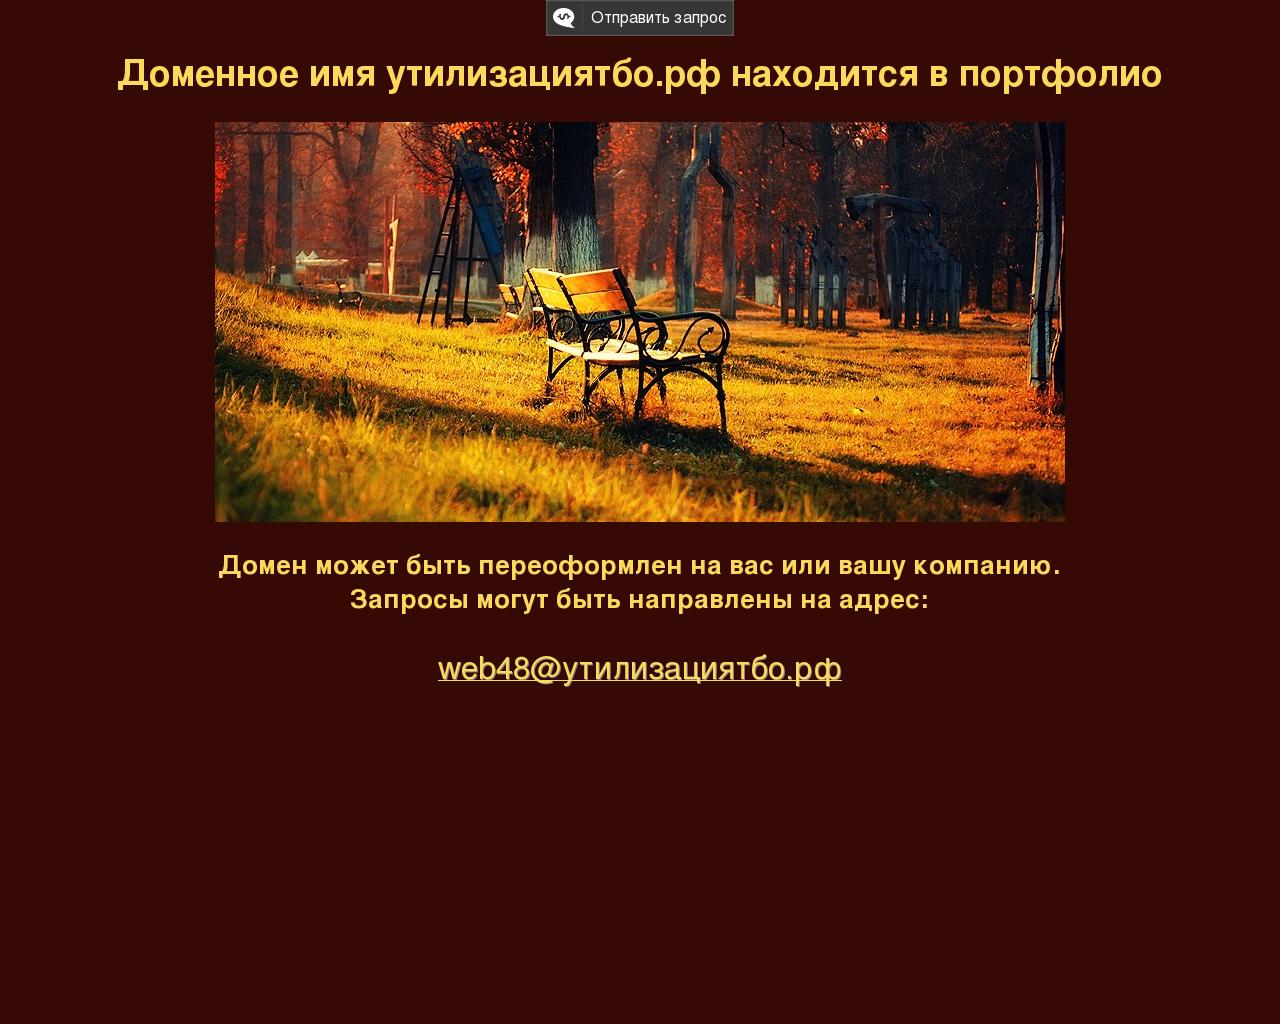 Изображение сайта утилизациятбо.рф в разрешении 1280x1024